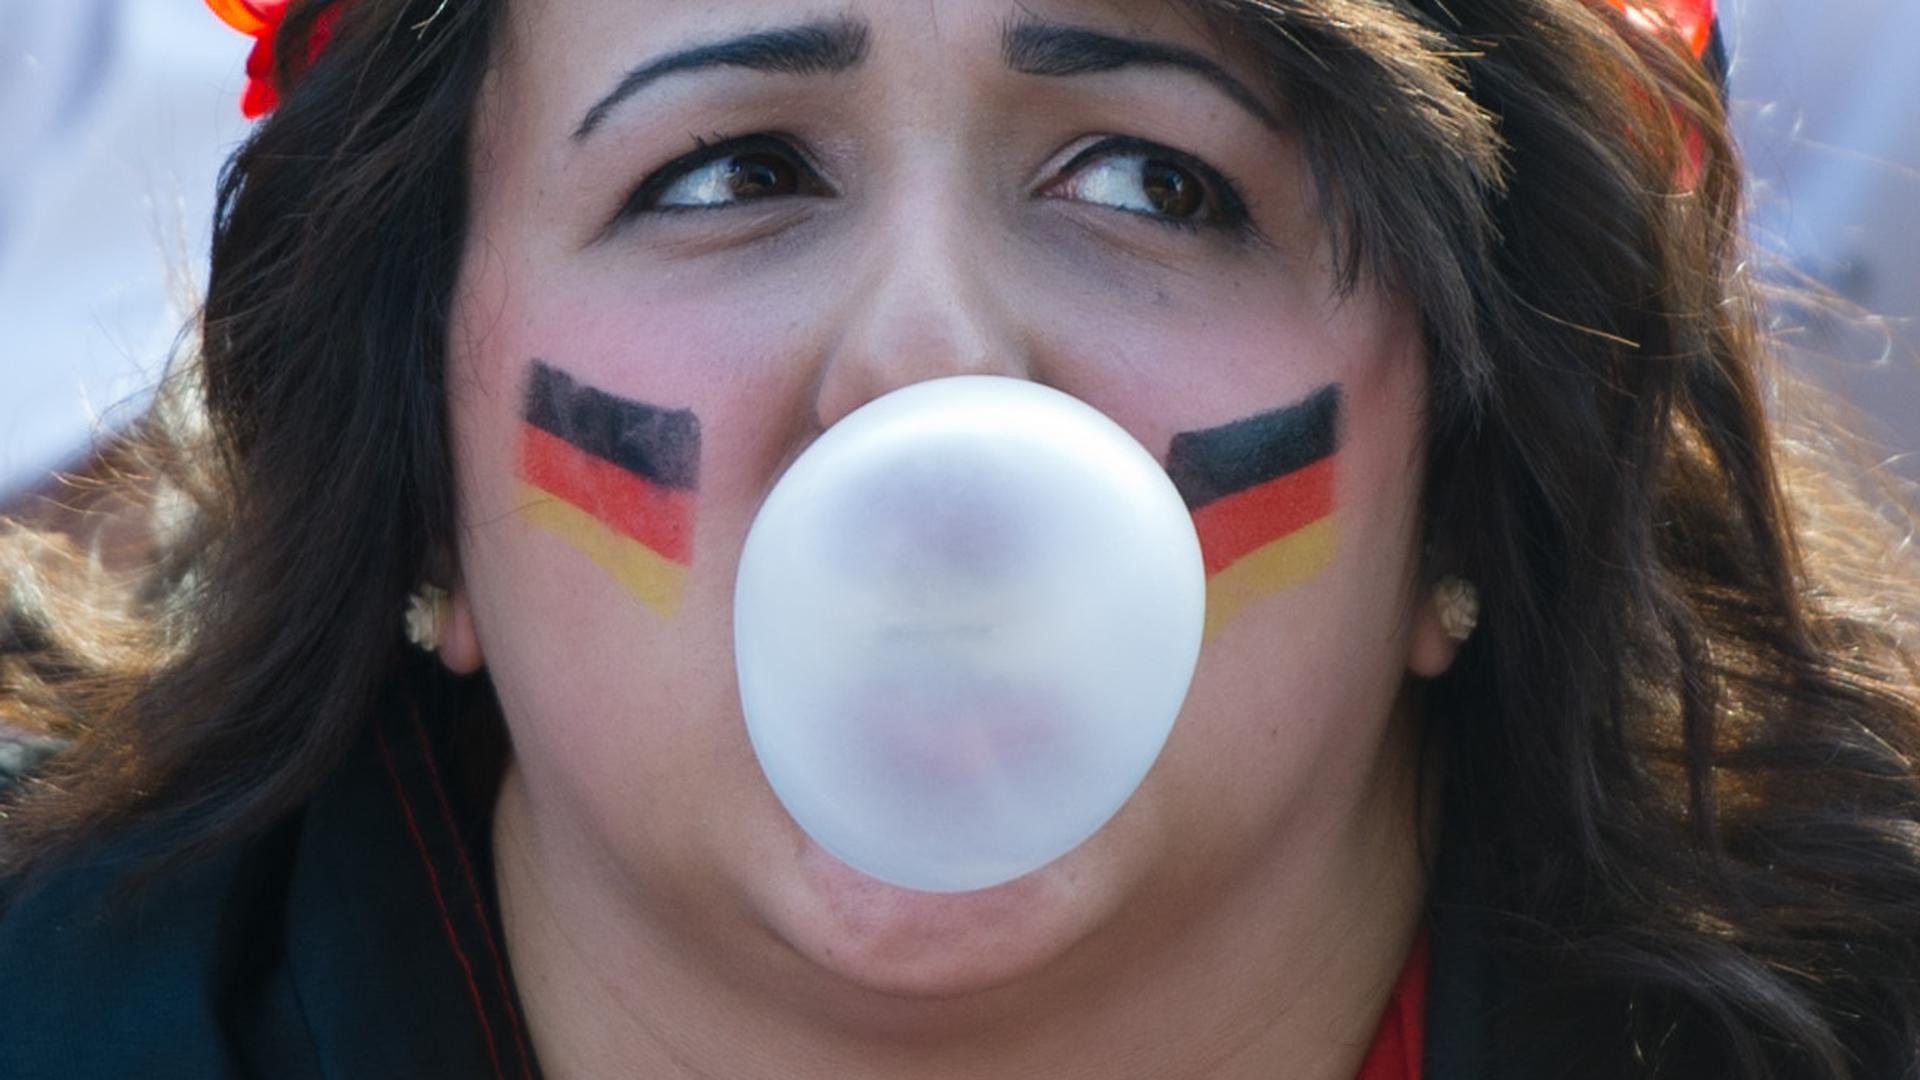 Beruhigt die Nerven: Eine Frau pustet während eines Fußballspiels der deutschen Mannschaft eine Kaugummi-Blase.  